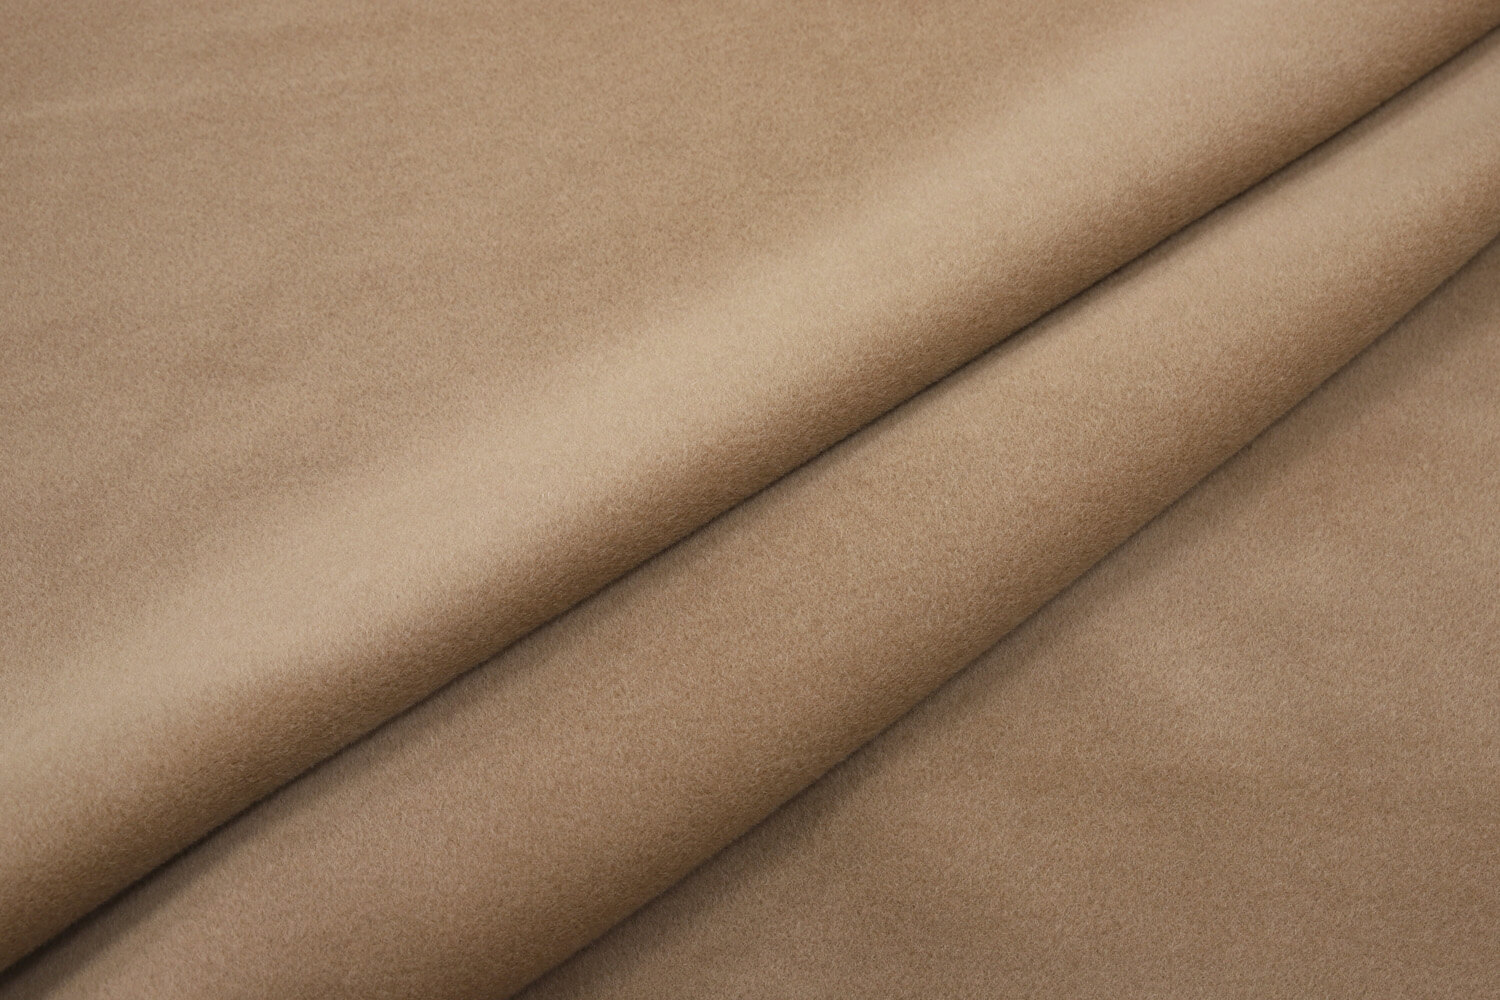 Пальтовая ткань beaver wool на пальто 101801 Max Mara ОТРЕЗЫ, цвет Бежевый, фото 1